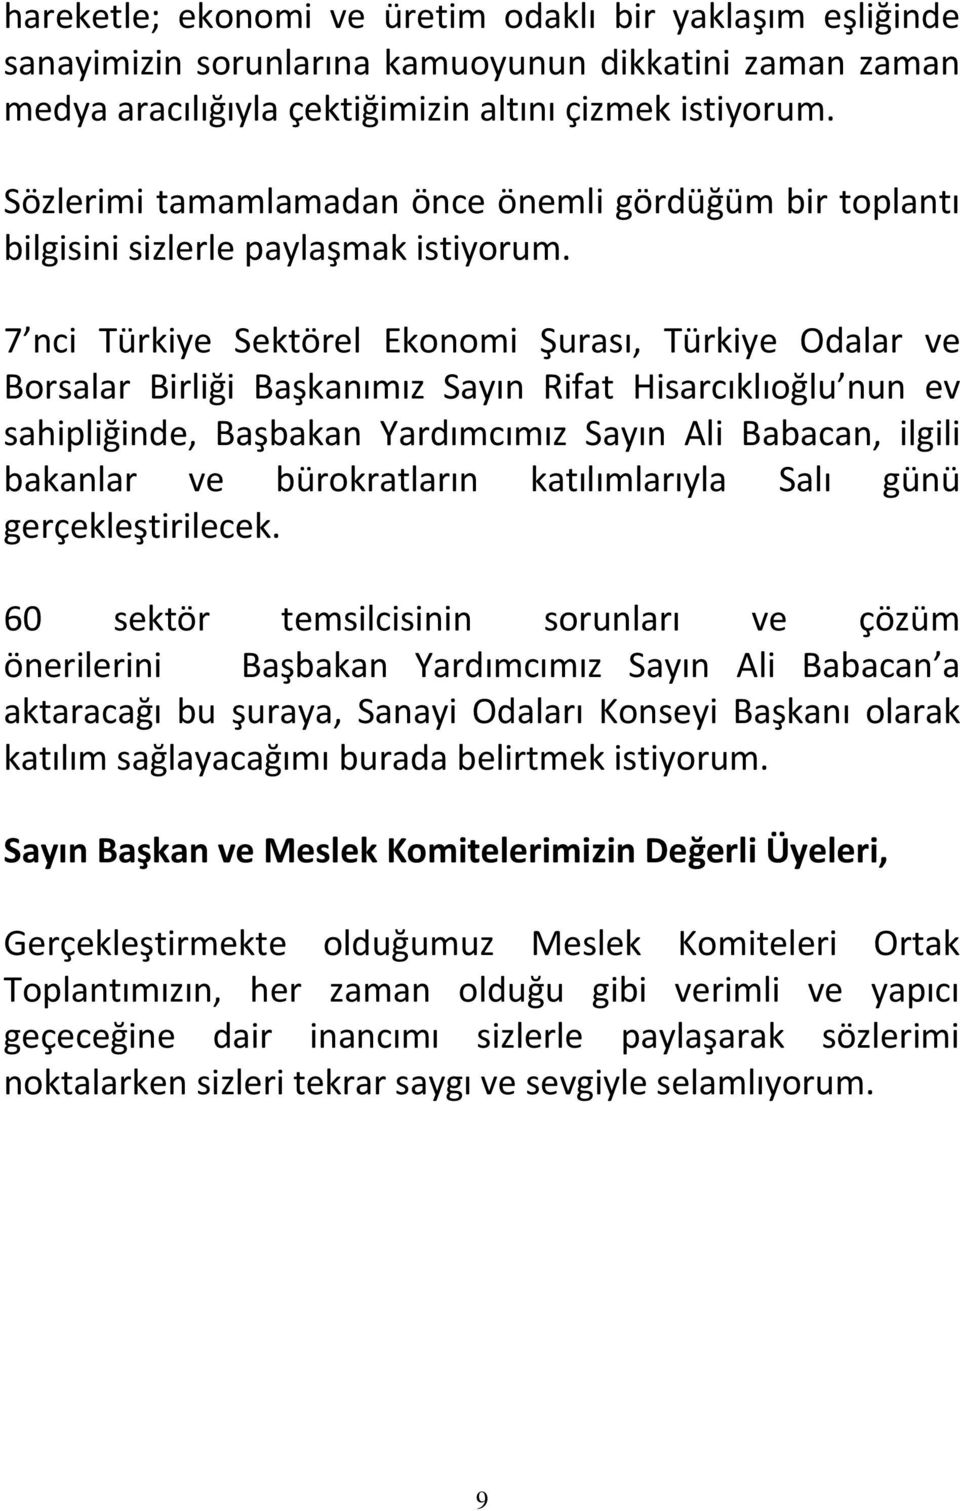 7 nci Türkiye Sektörel Ekonomi Şurası, Türkiye Odalar ve Borsalar Birliği Başkanımız Sayın Rifat Hisarcıklıoğlu nun ev sahipliğinde, Başbakan Yardımcımız Sayın Ali Babacan, ilgili bakanlar ve